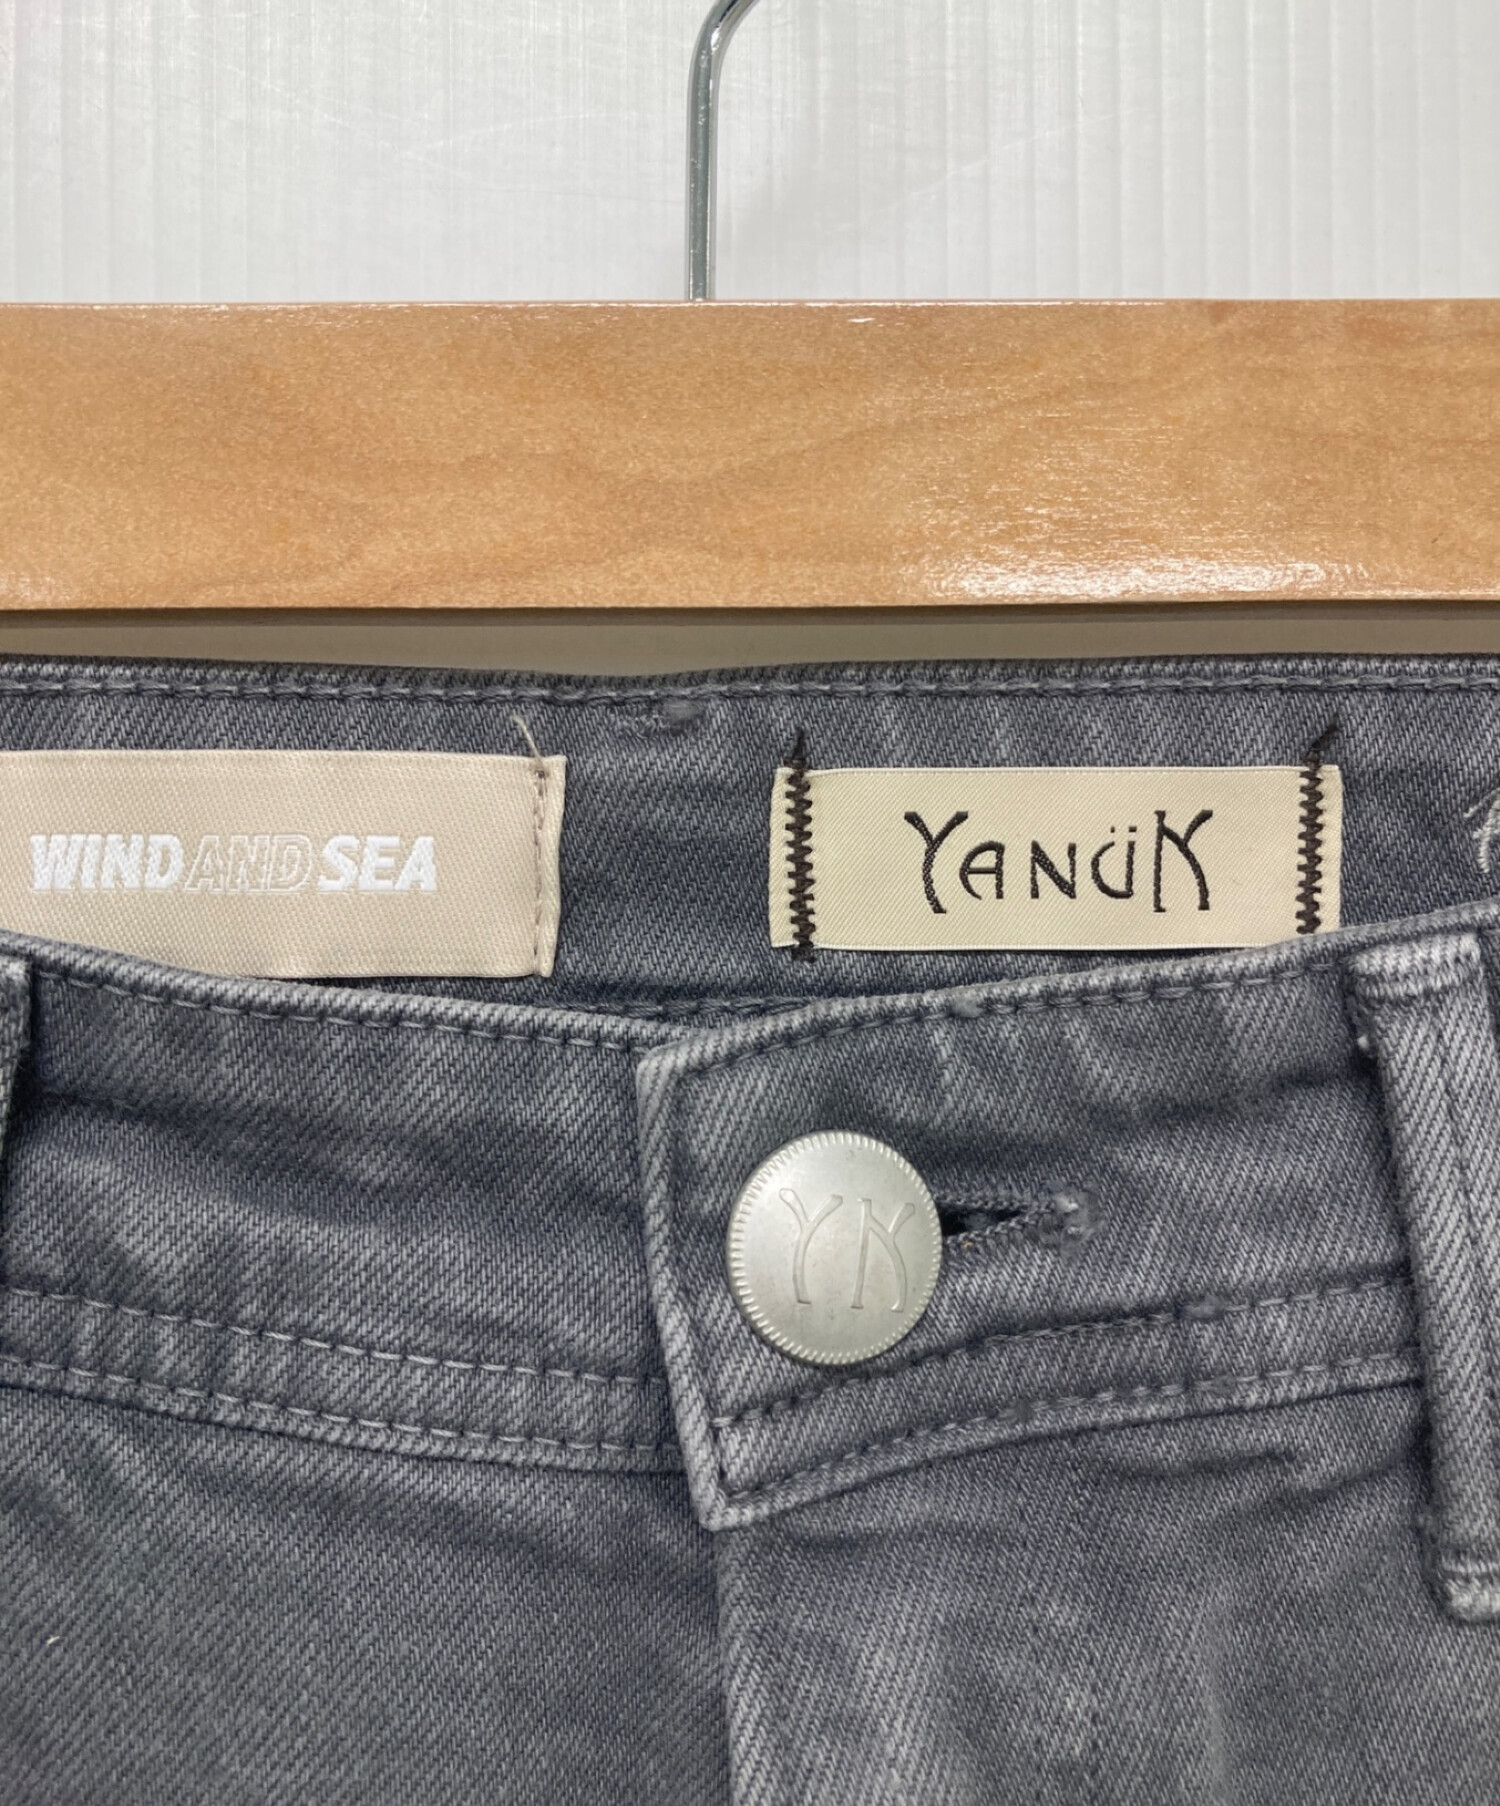 Yanuk ヤヌーク WIND AND SEA ウィンダンシー デニムパンツ size24